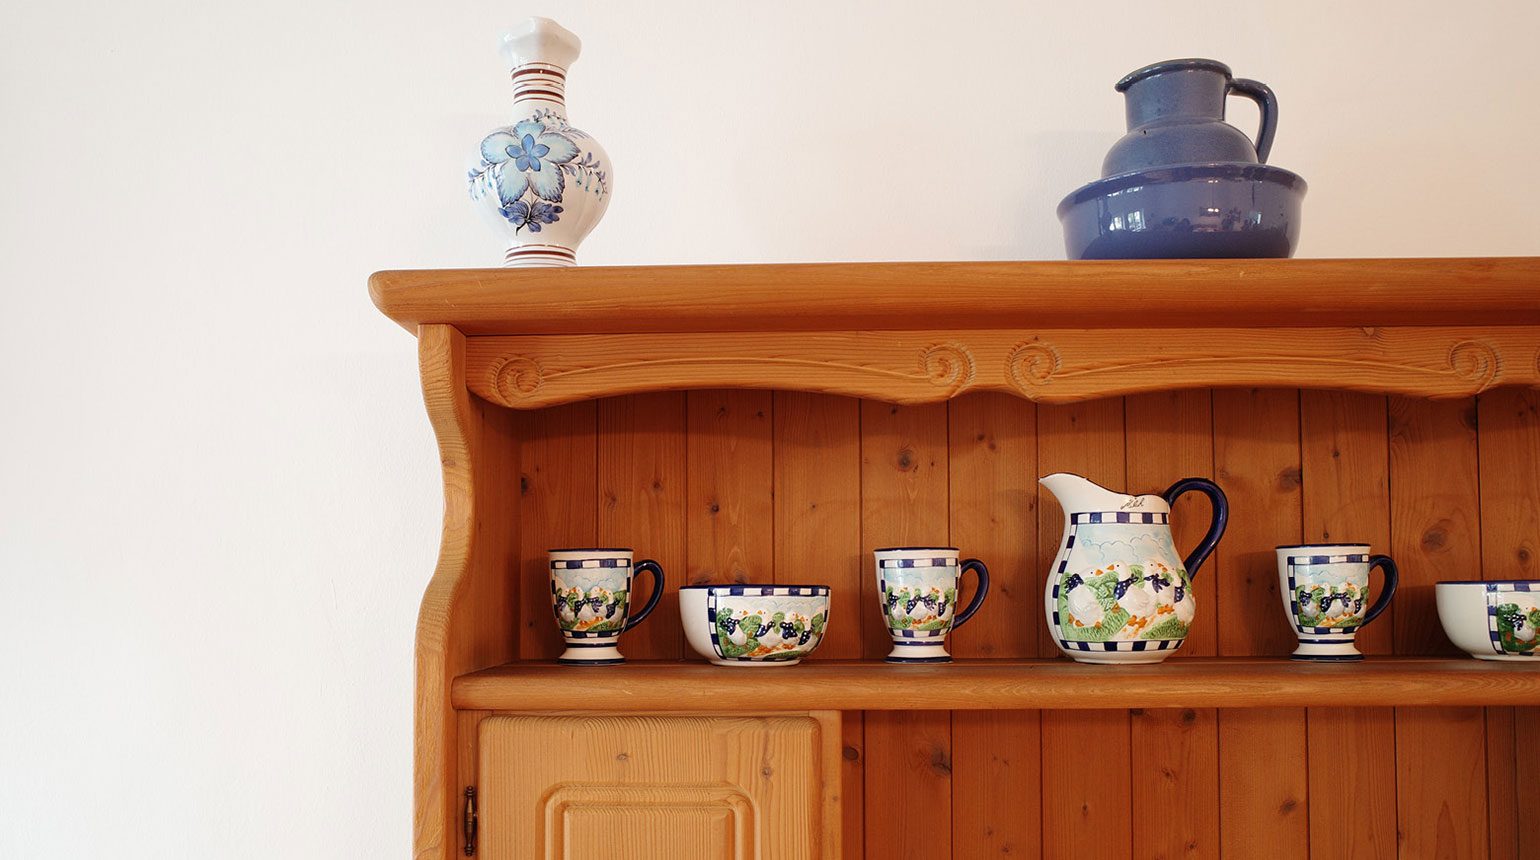 Detailaufnahme: Wohnzimmerschrank im bäuerlichen Stil mit bemaltem Keramikgeschirr. 